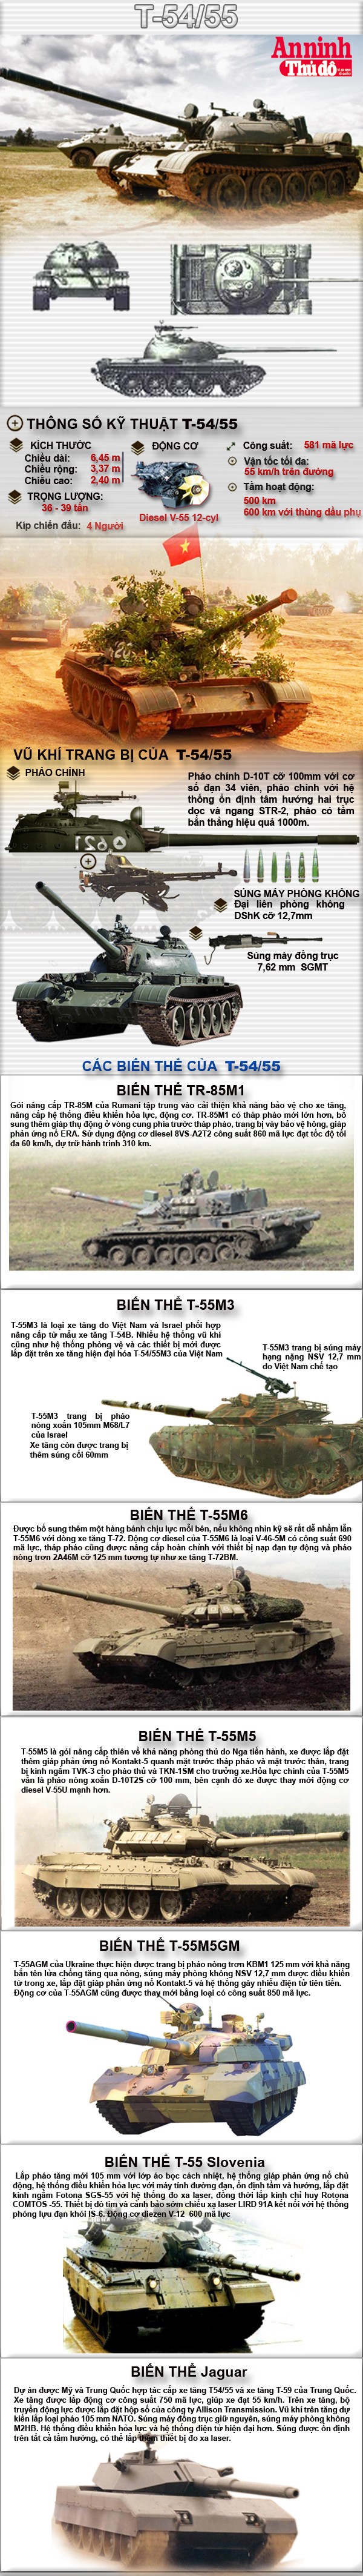 [Infographic] Xe tăng T-54/55 - Người hùng chốn sa trường ảnh 1